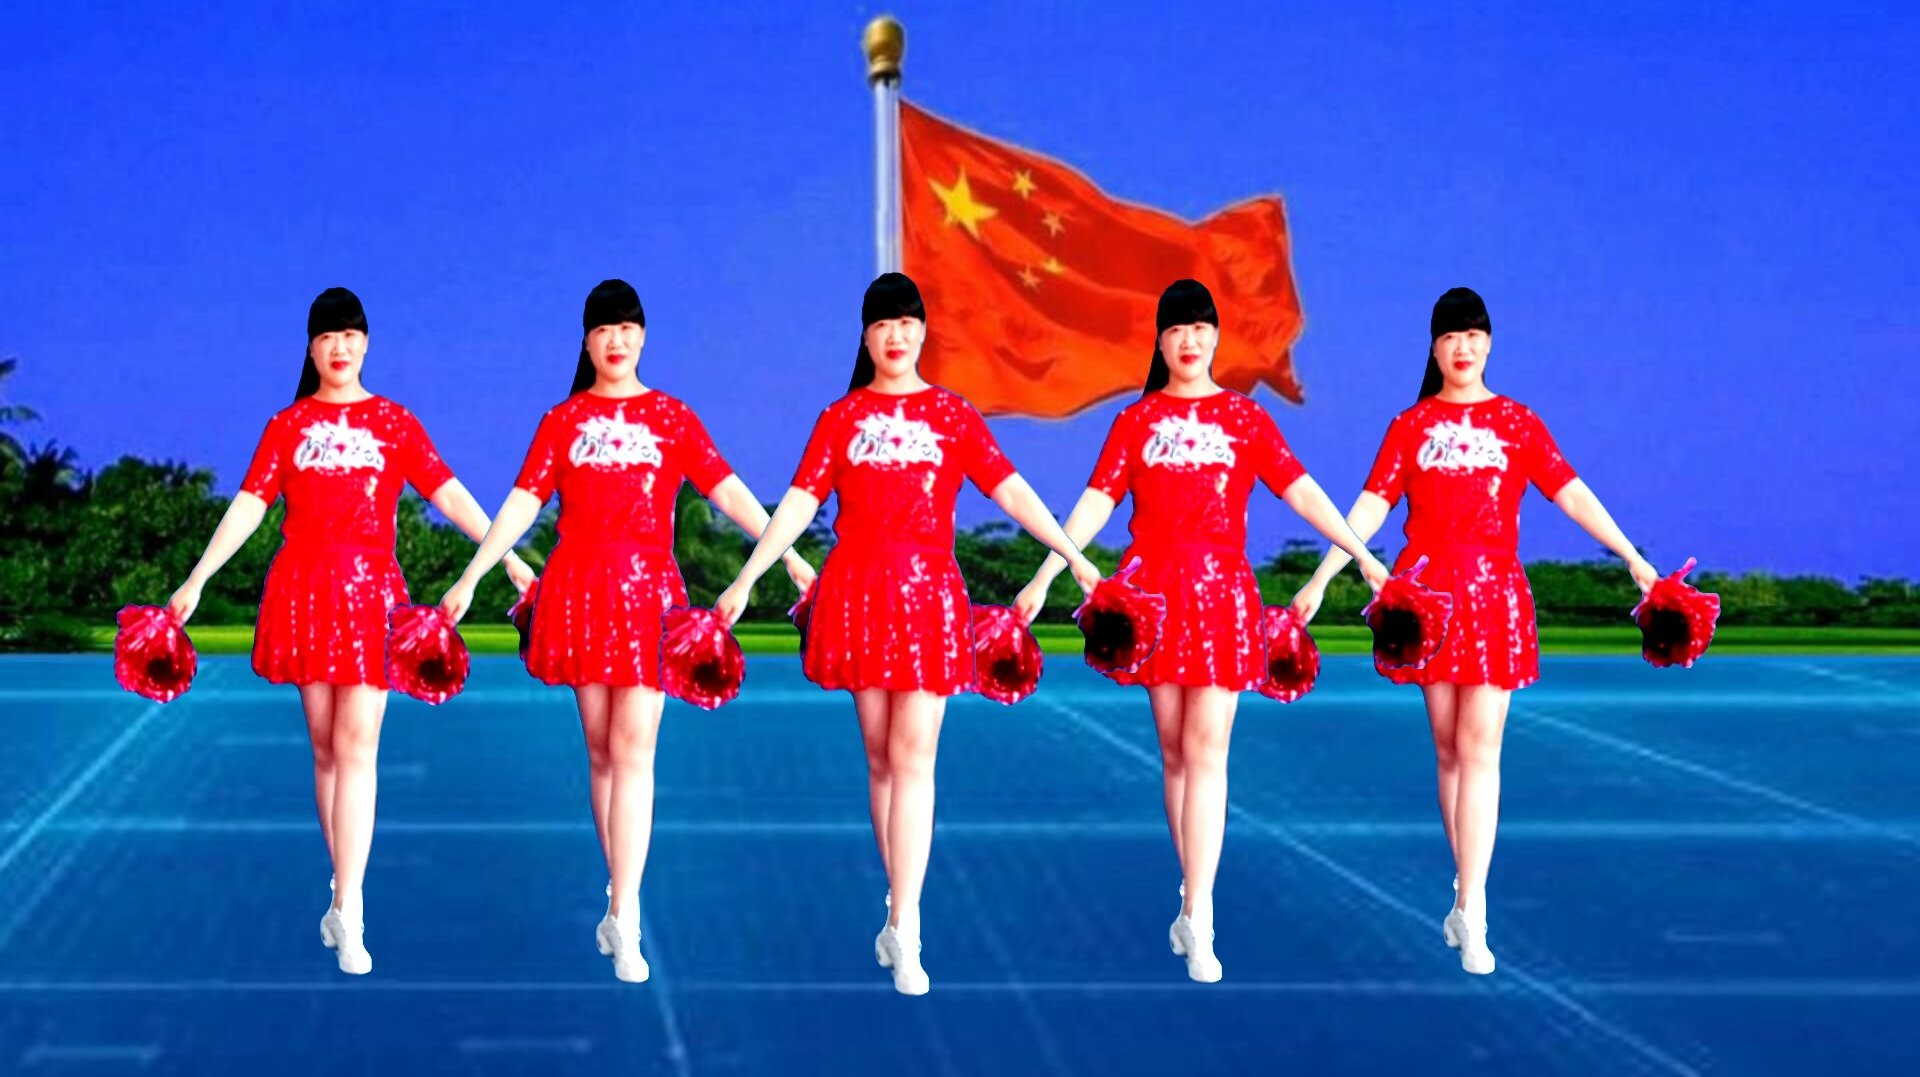 迎国庆,献完整版花球广场舞《中国红》大气好看,为祖国点赞喝彩